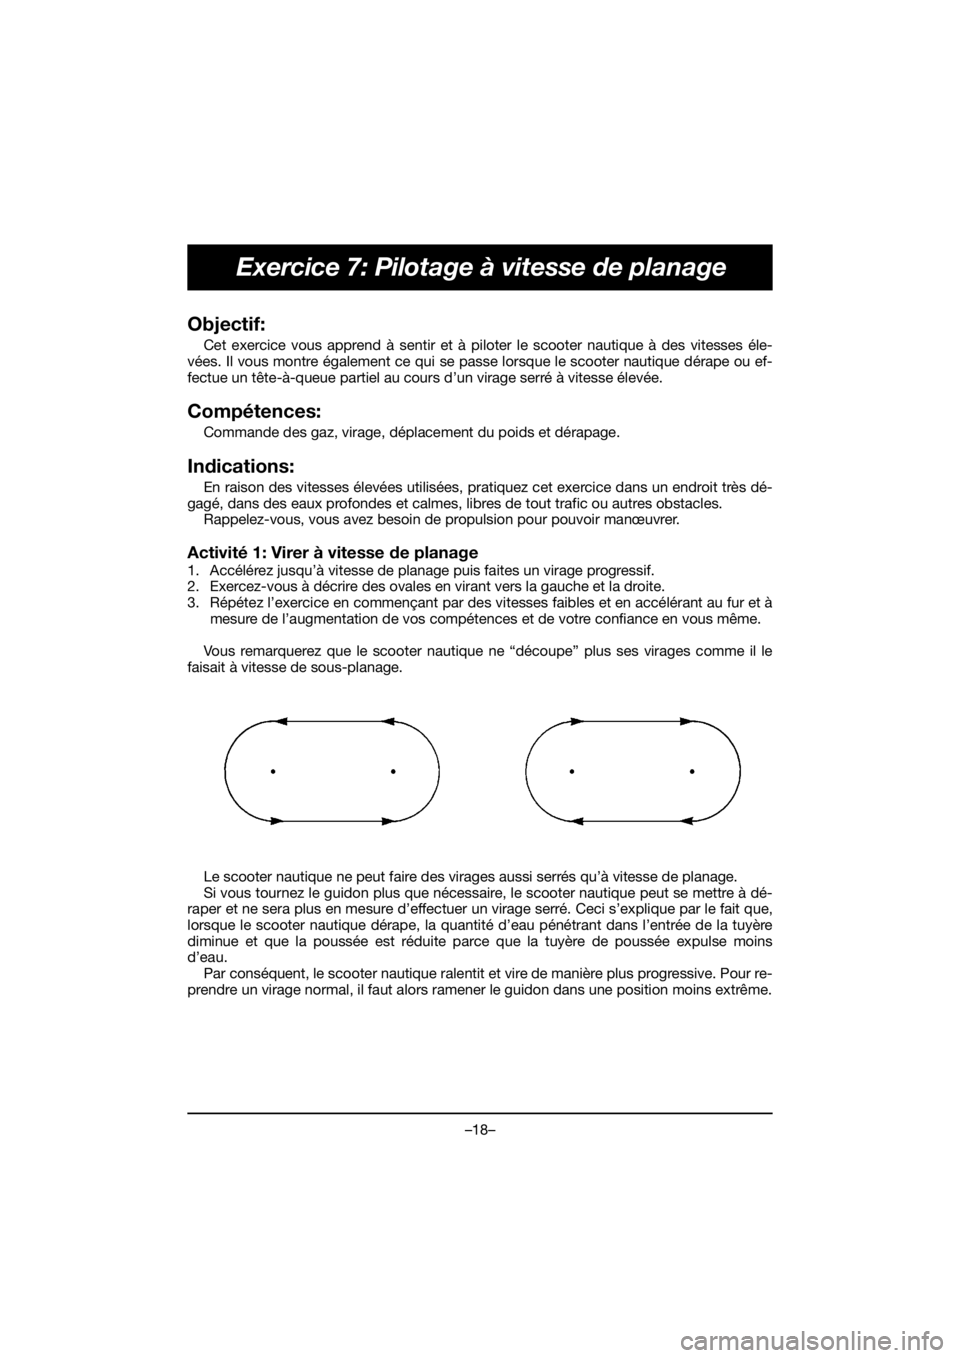 YAMAHA EX 2019  Manual de utilização (in Portuguese) –18–
Exercice 7: Pilotage à vitesse de planage
Objectif: 
Cet exercice vous apprend à sentir et à piloter le scooter nautique à des vitesses éle-
vées. Il vous montre également ce qui se pa